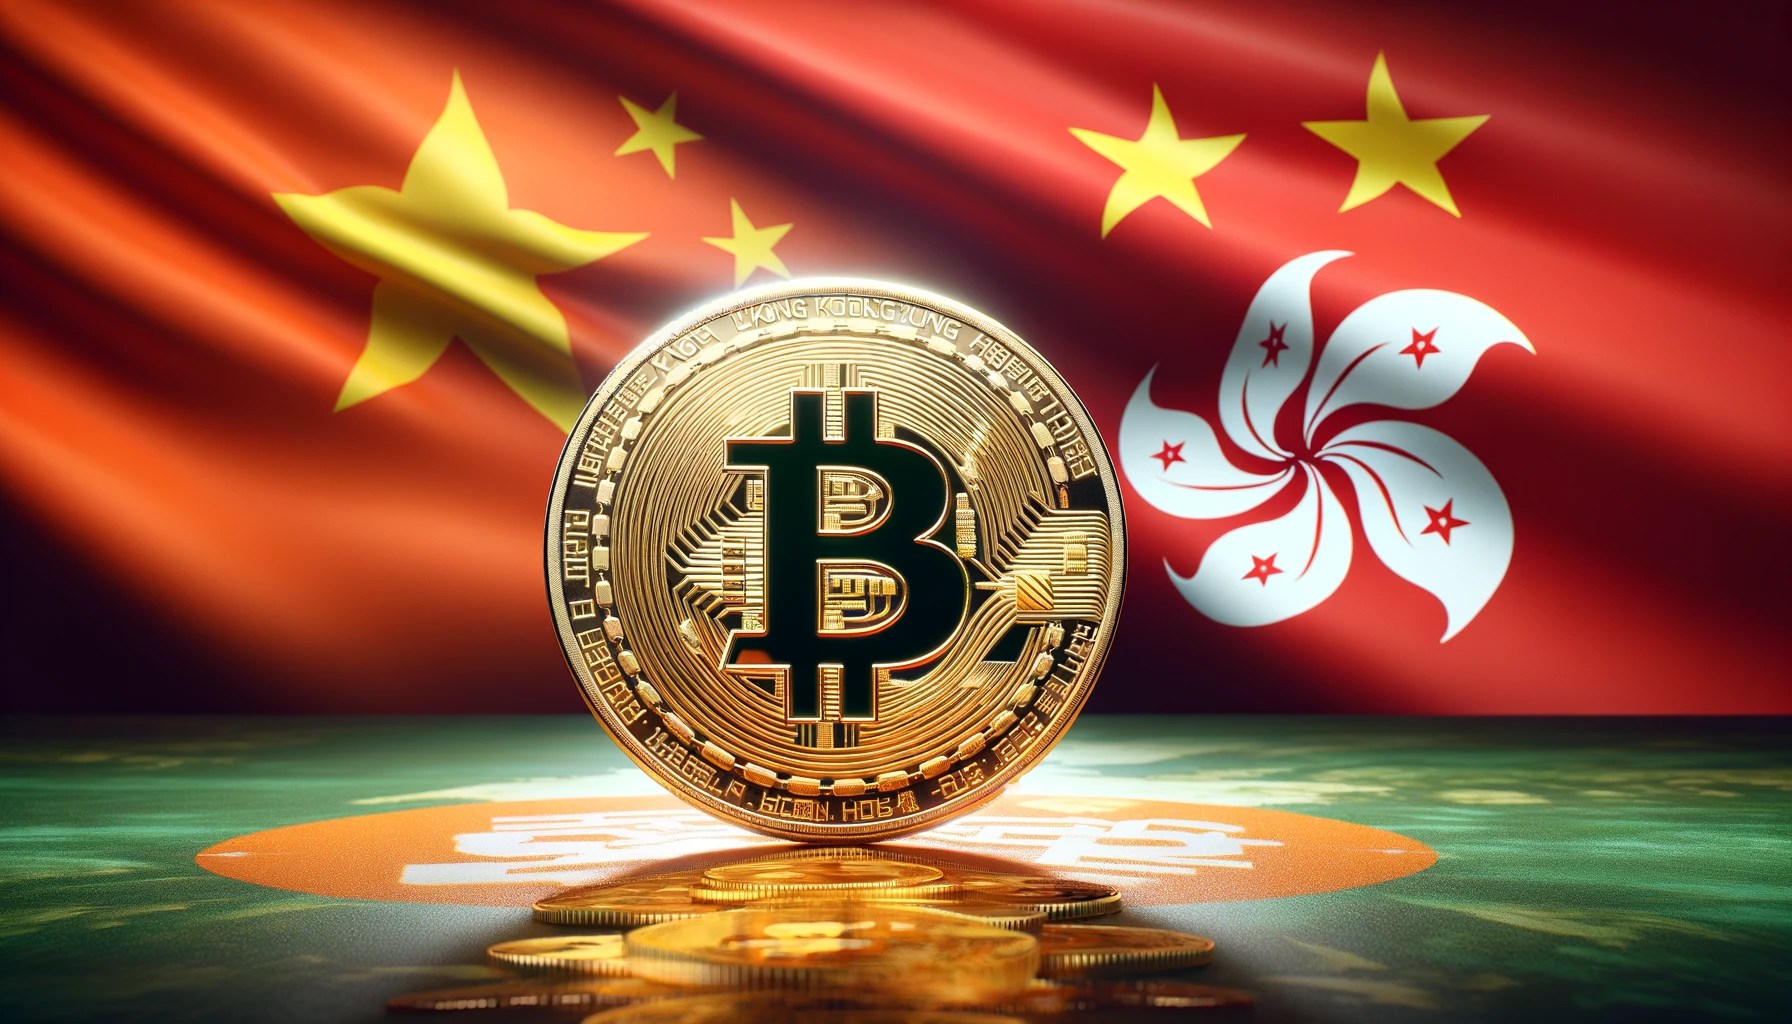 Hong Kong Bitcoin ETF Mainland China